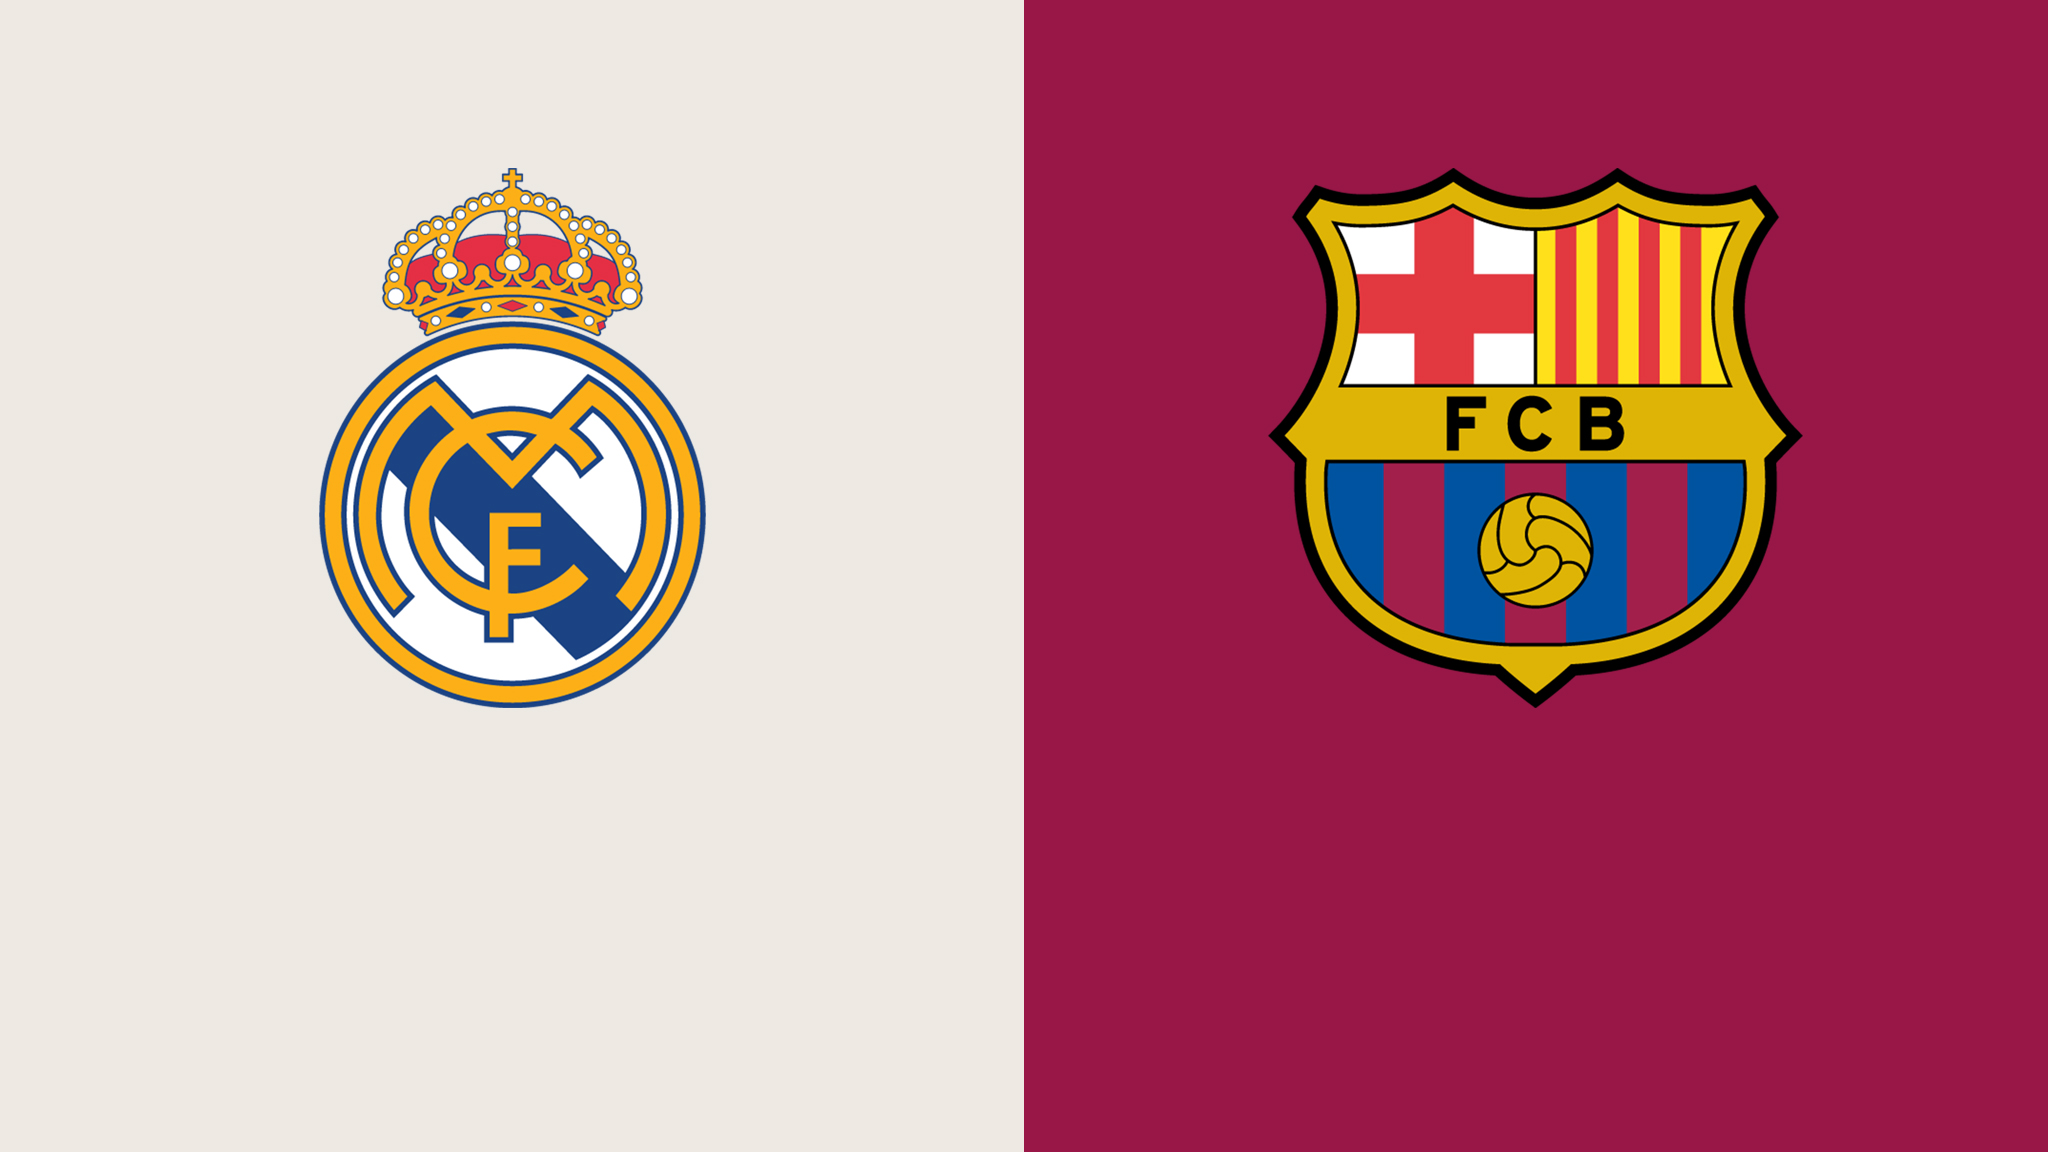  كأس إسبانيا : مباراة برشلونة وريال مدريد اليوم و القنوات الناقلة Barcelona vs Real Madrid